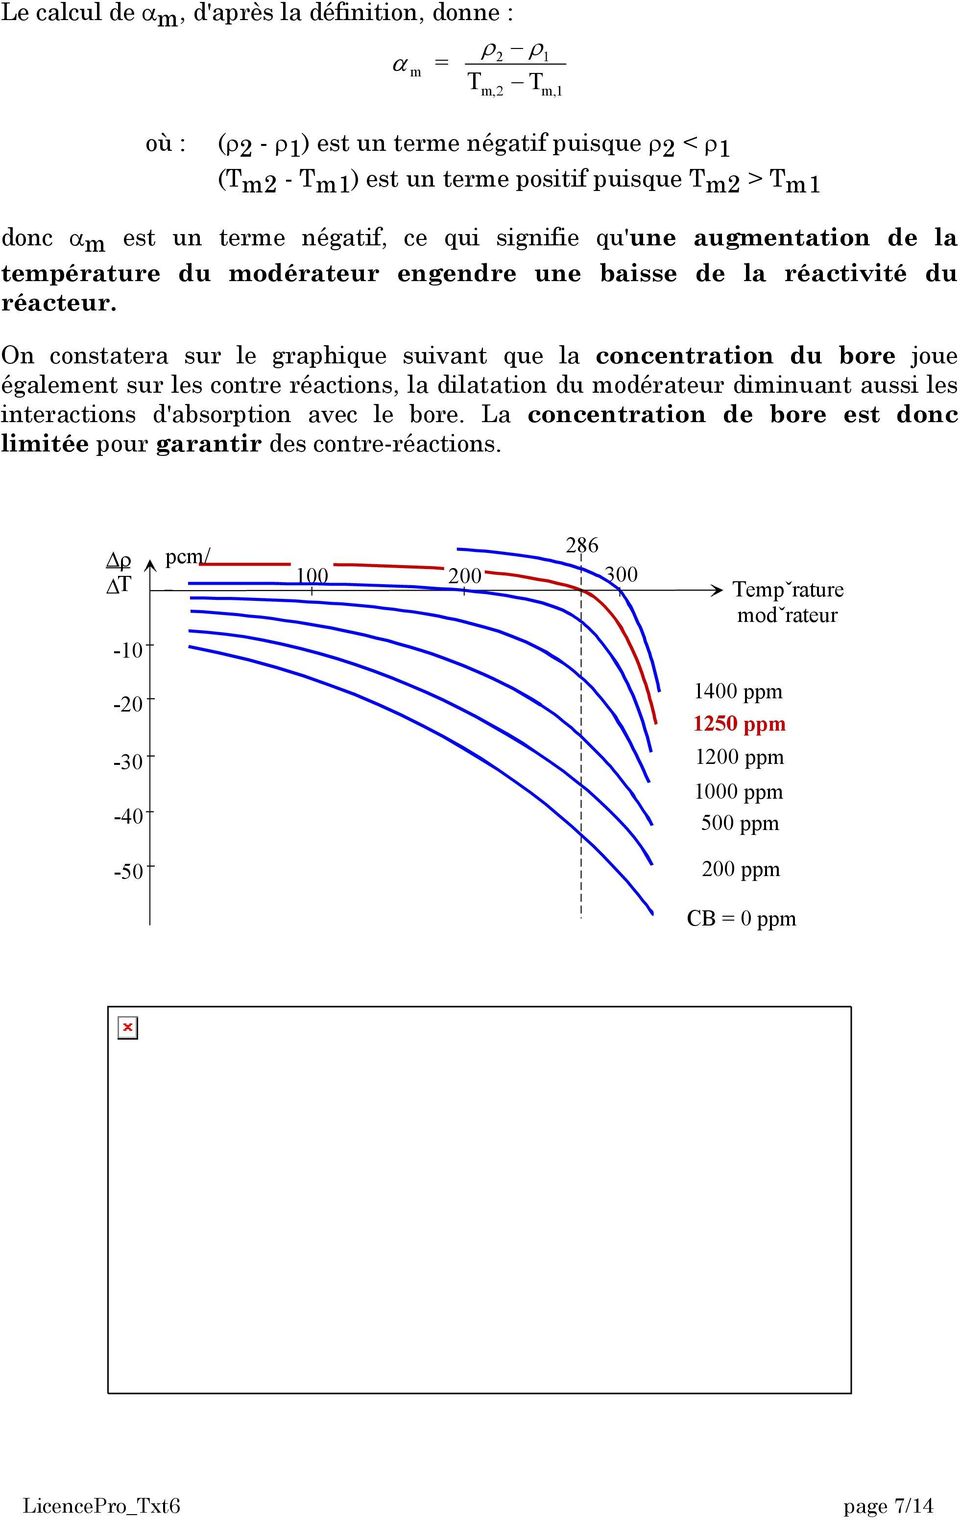 On constatera sur le graphique suivant que la concentration du bore joue également sur les contre réactions, la dilatation du modérateur diminuant aussi les interactions d'absorption avec le